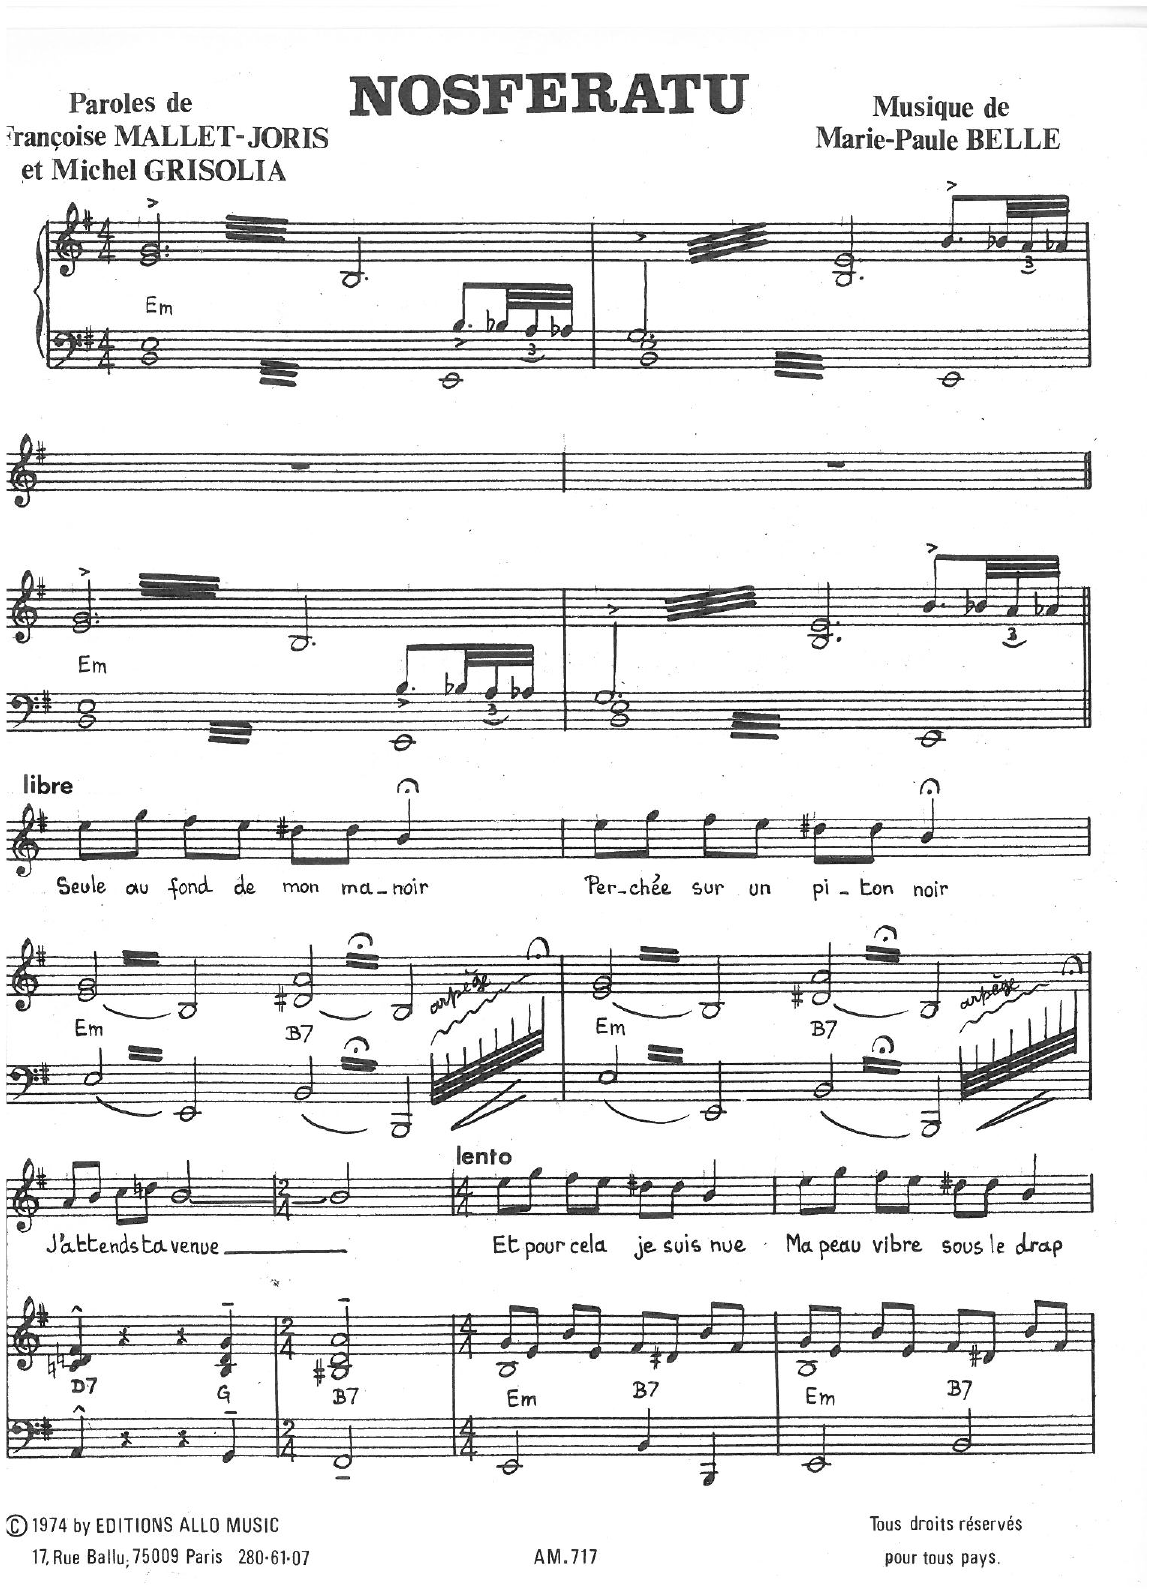 Michel Grisolia, Françoise Mallet-Joris, Marie Paule Belle Nosferatu Sheet Music Notes & Chords for Piano & Vocal - Download or Print PDF